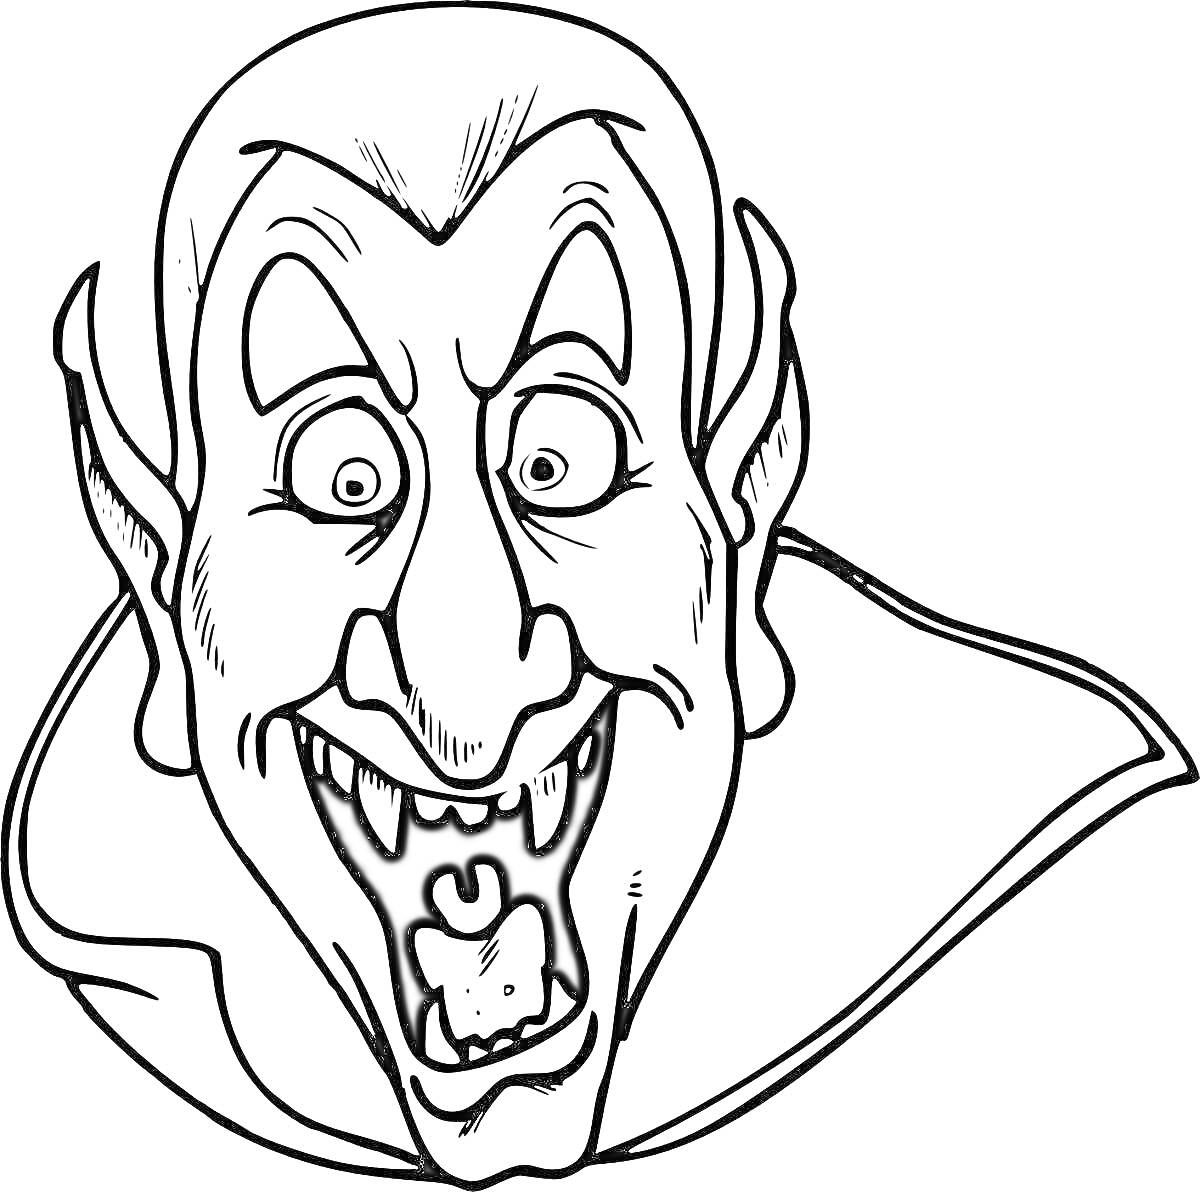 Голова вампира с длинными ушами, клыками и накидкой